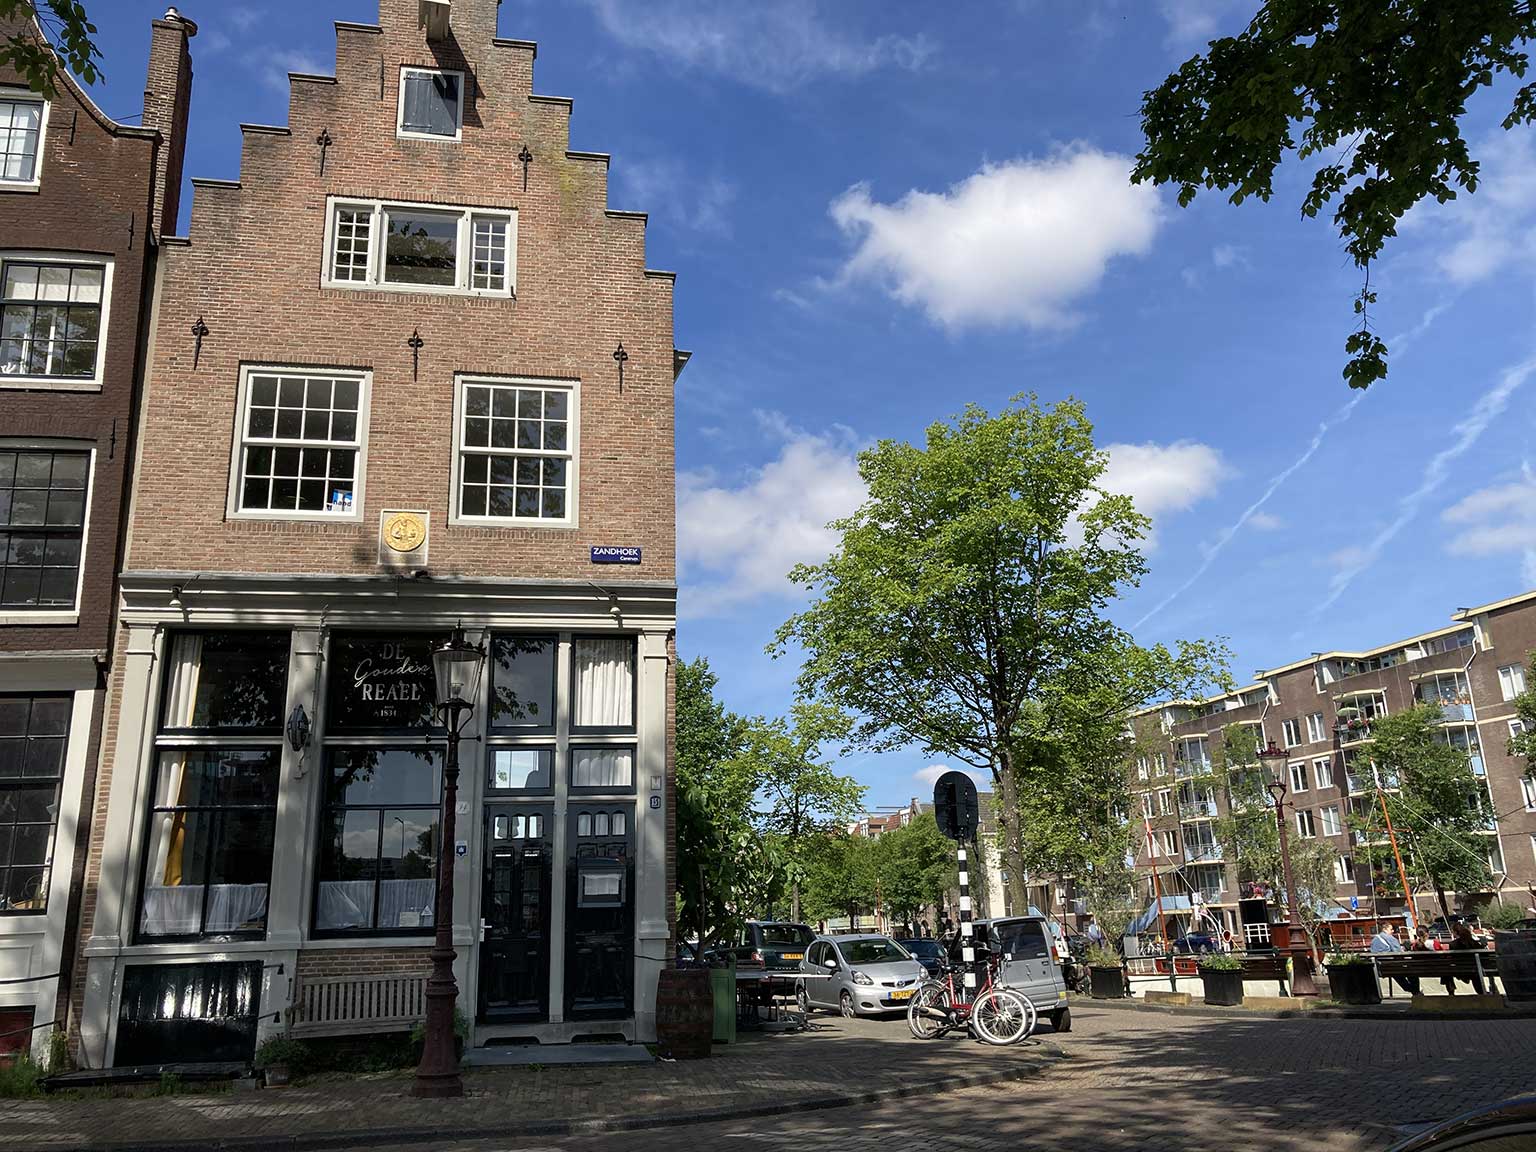 Restaurant De Gouden Reael at Zandhoek 14, Amsterdam